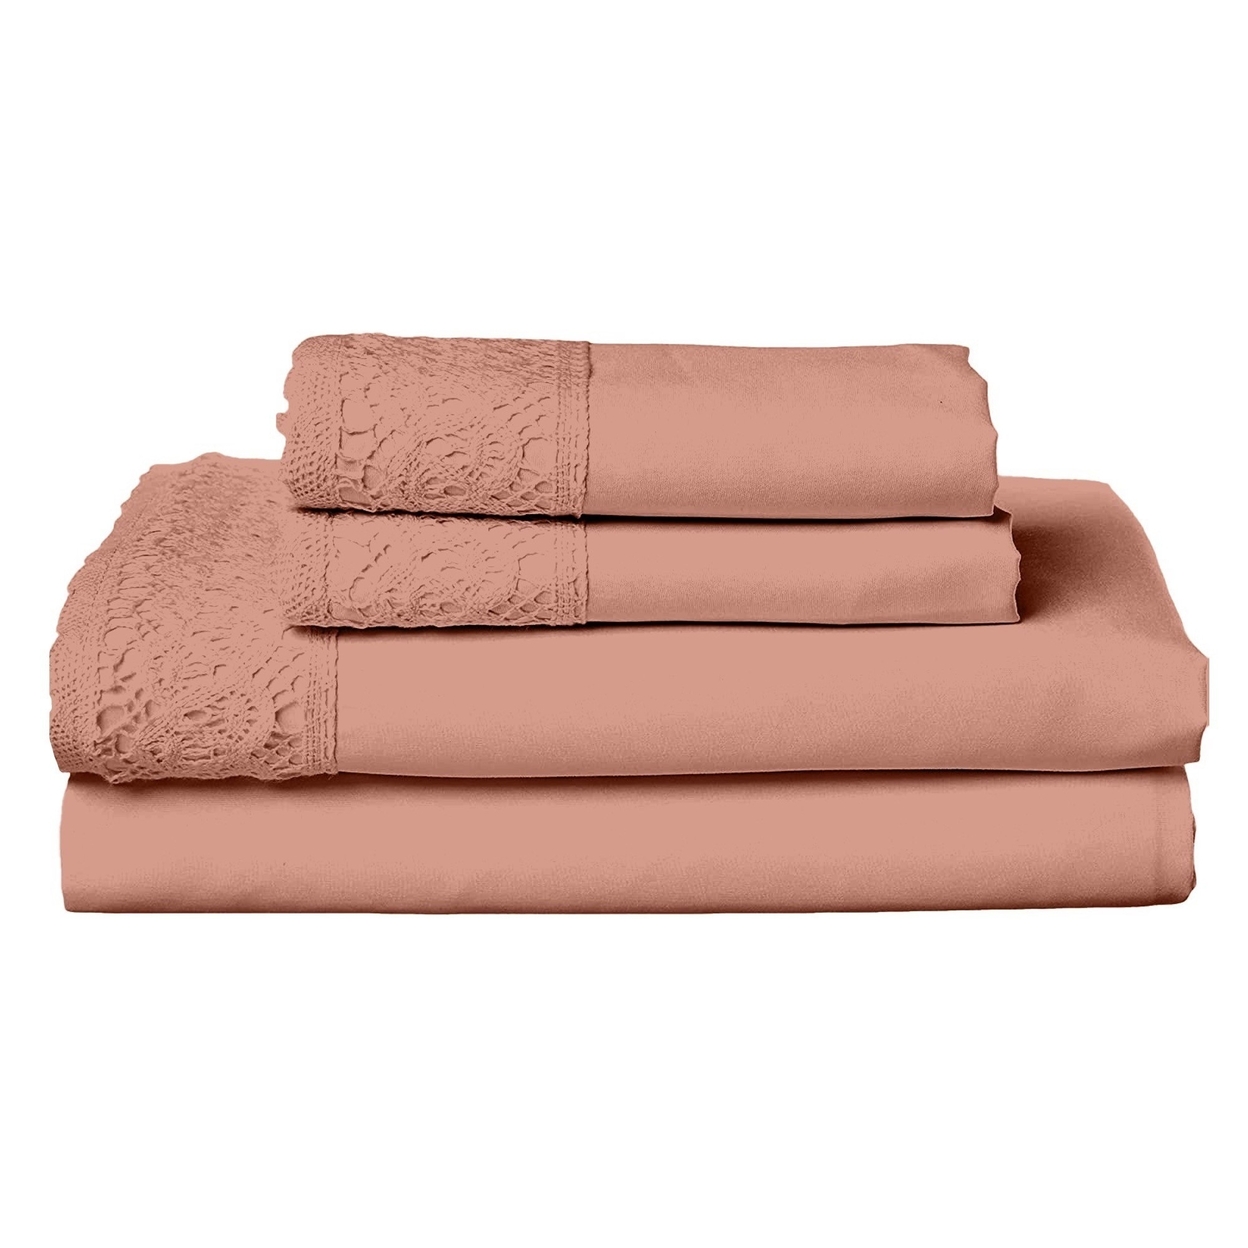 Edra 4 Piece Microfiber Full Size Bed Sheet Set, Crochet Lace, Dusty Pink- Saltoro Sherpi